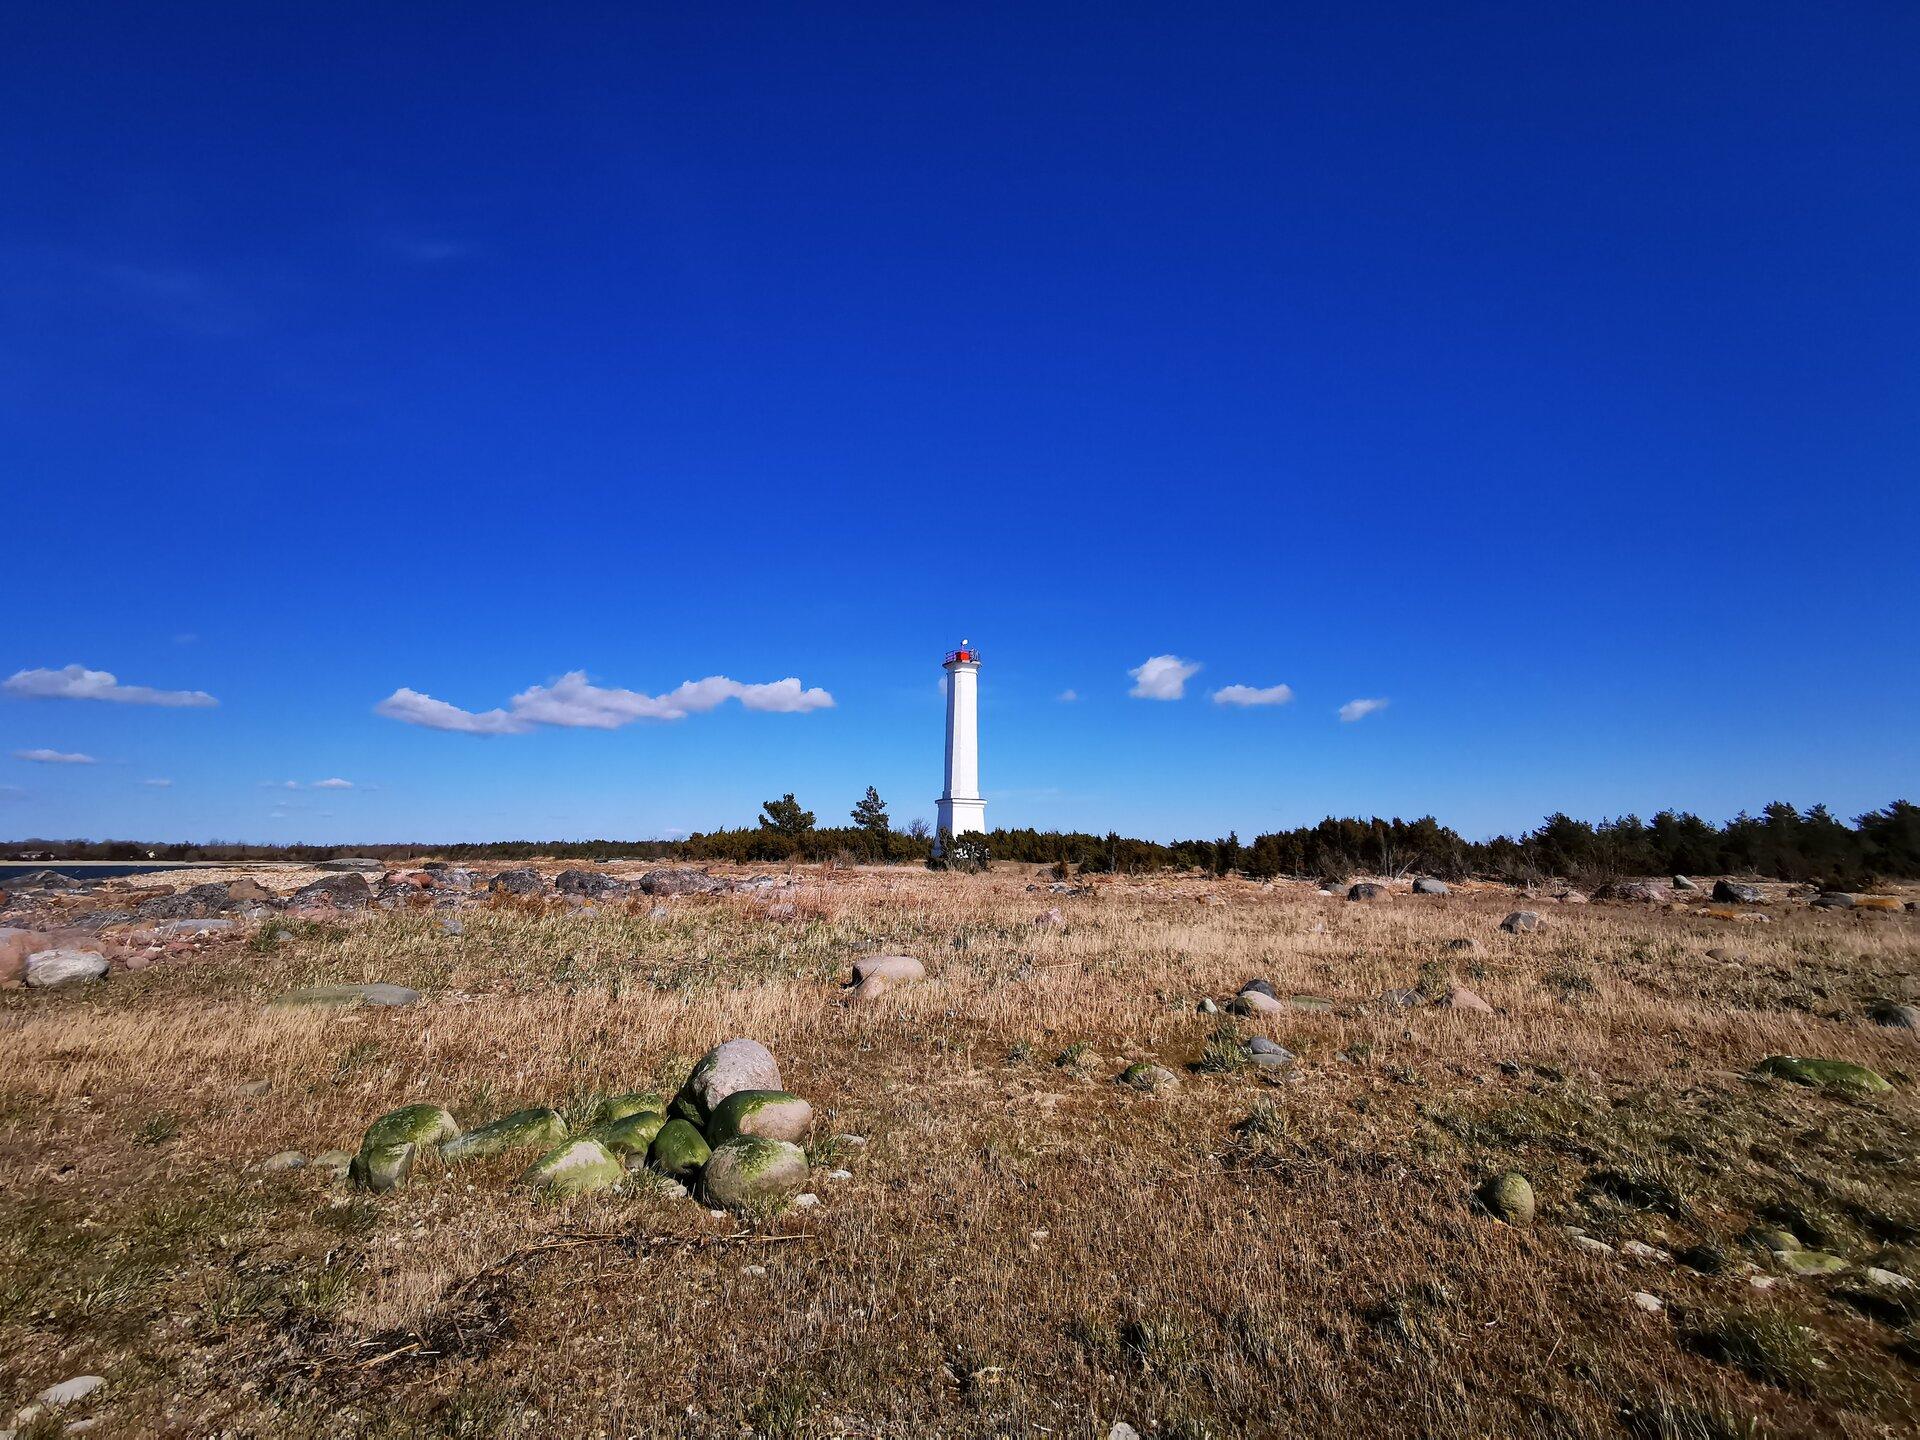 Sõmeri Lighthouse